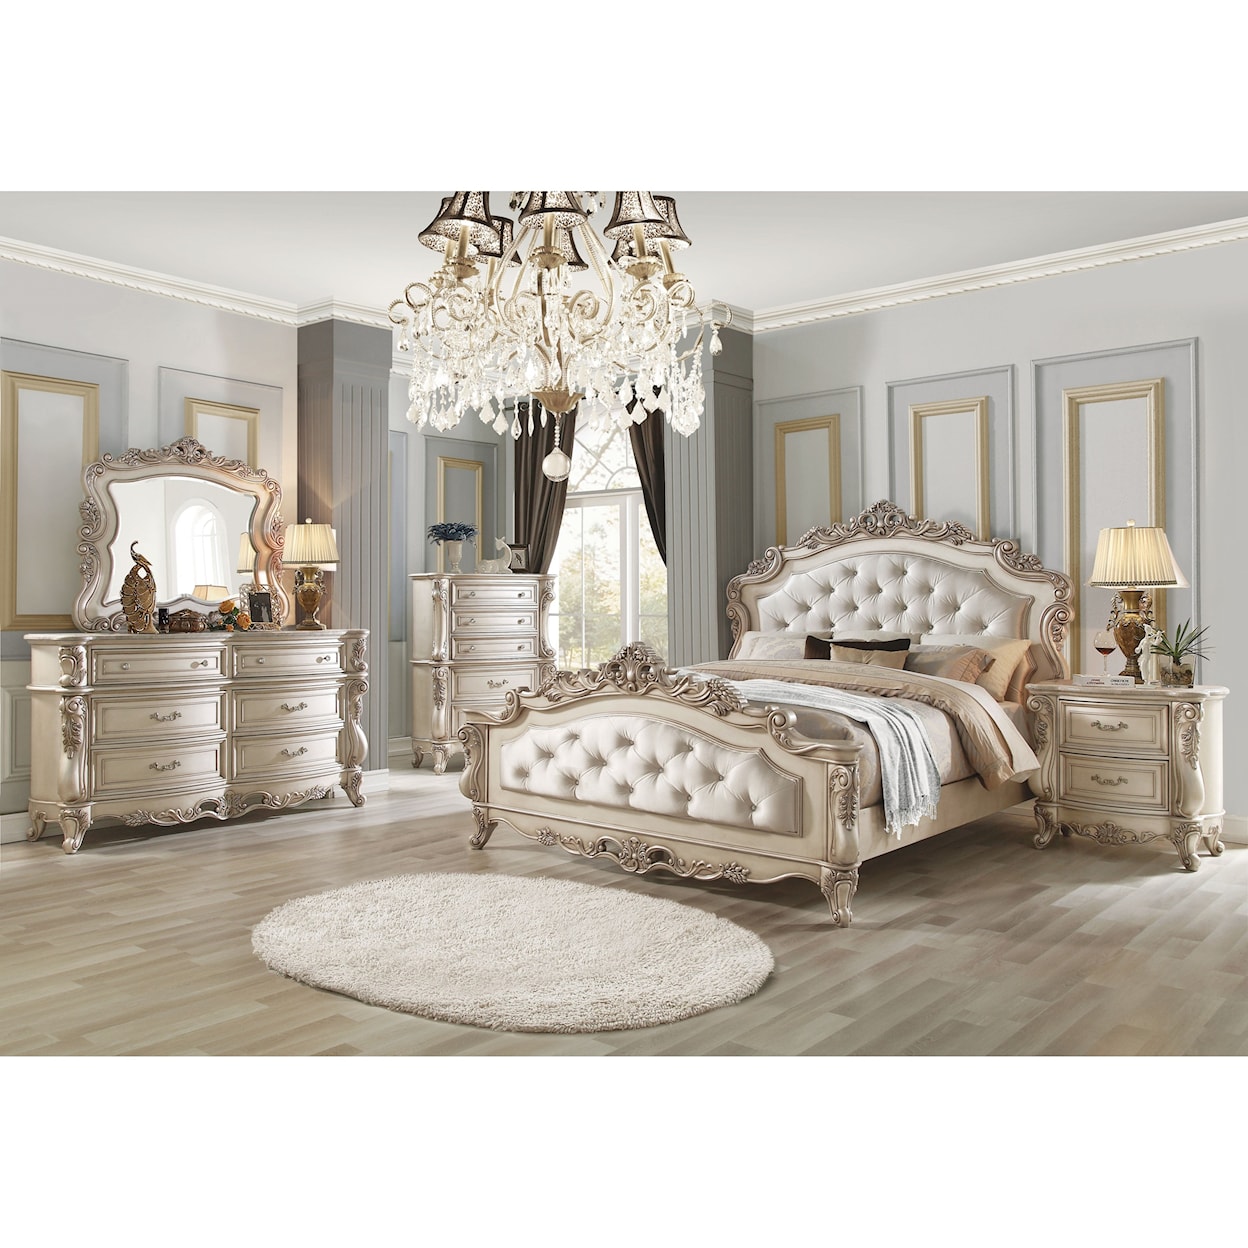 Acme Furniture Gorsedd Queen Bedroom Group